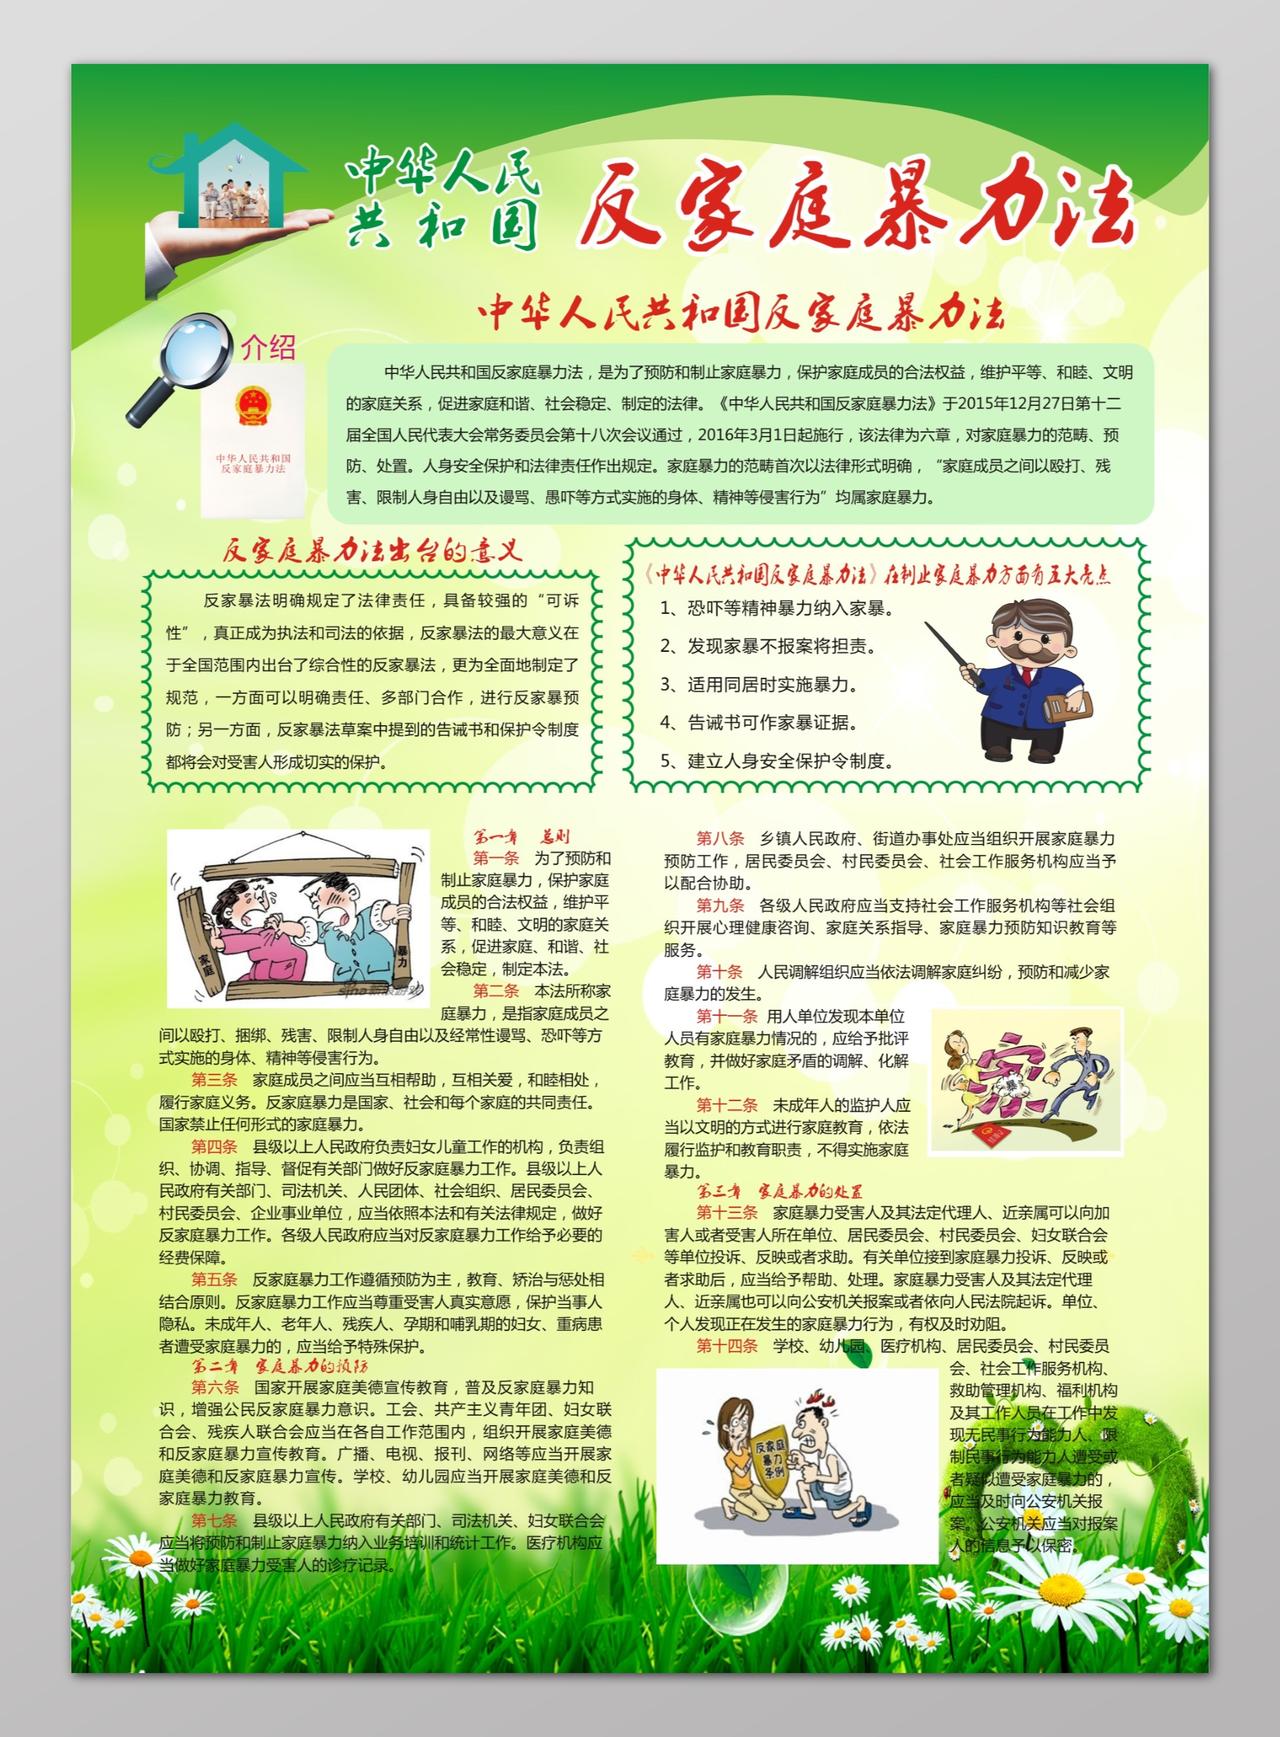 绿色简约图文清新反对家庭暴力宣传海报